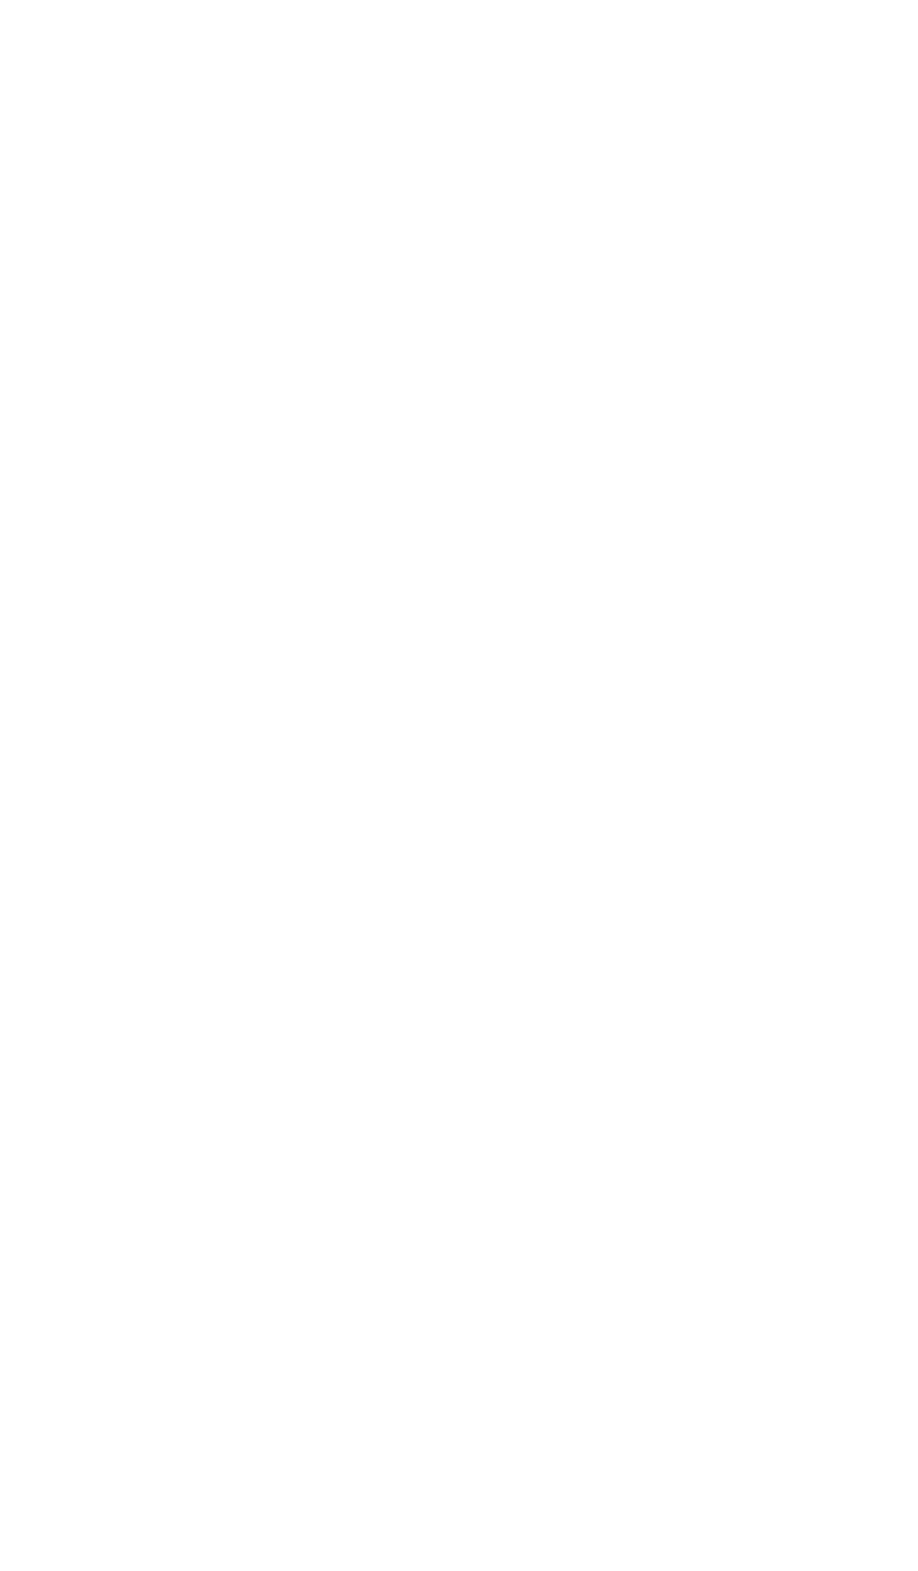 EOG Resources logo pour fonds sombres (PNG transparent)